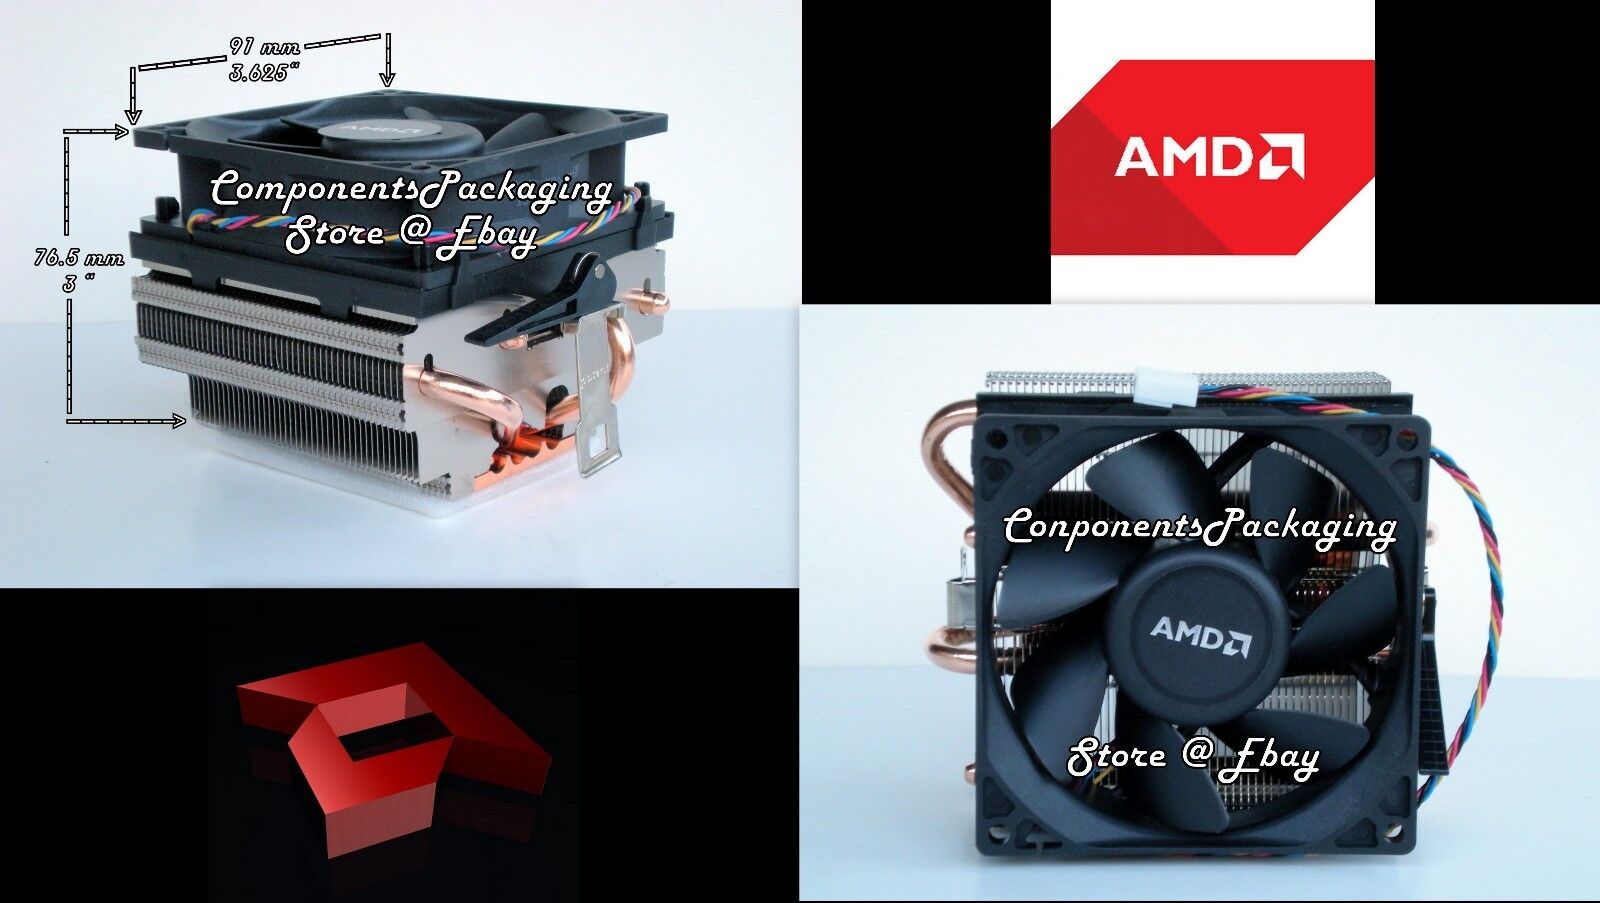 AMD A10-7870K Cooler Fan + Heatsink 125W Near Silent Thermal Solution - (NO CPU)